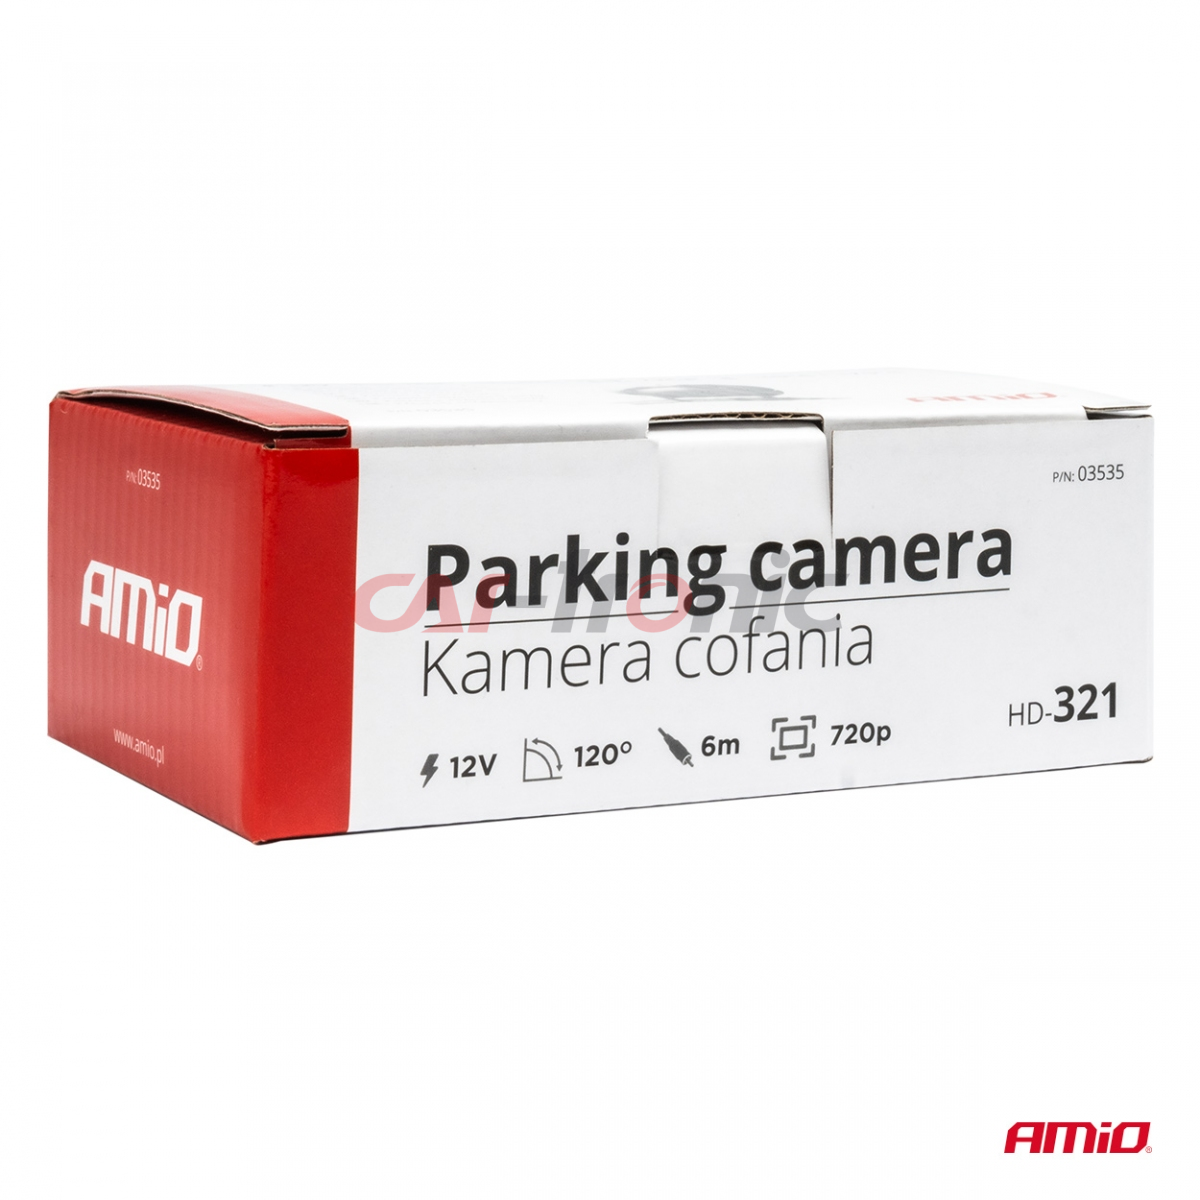 Kamera cofania parkowania HD-321 12v 720p AMIO-03535